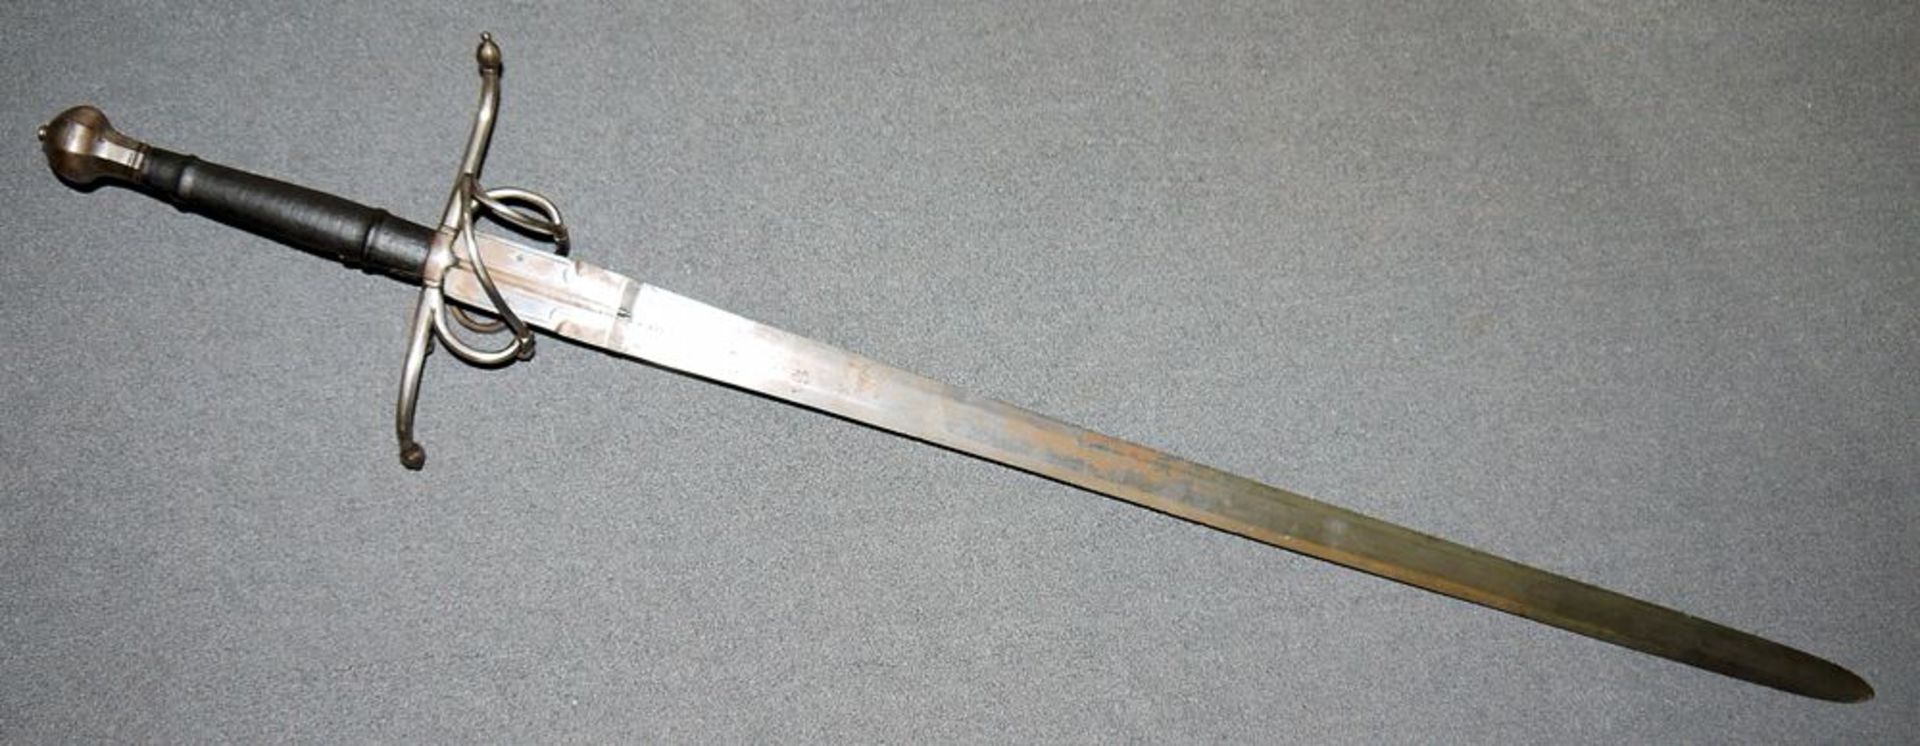 Qualitätvolles Beidhänder-Schwert des Historismus, wohl 18./19. Jh. - Image 5 of 5